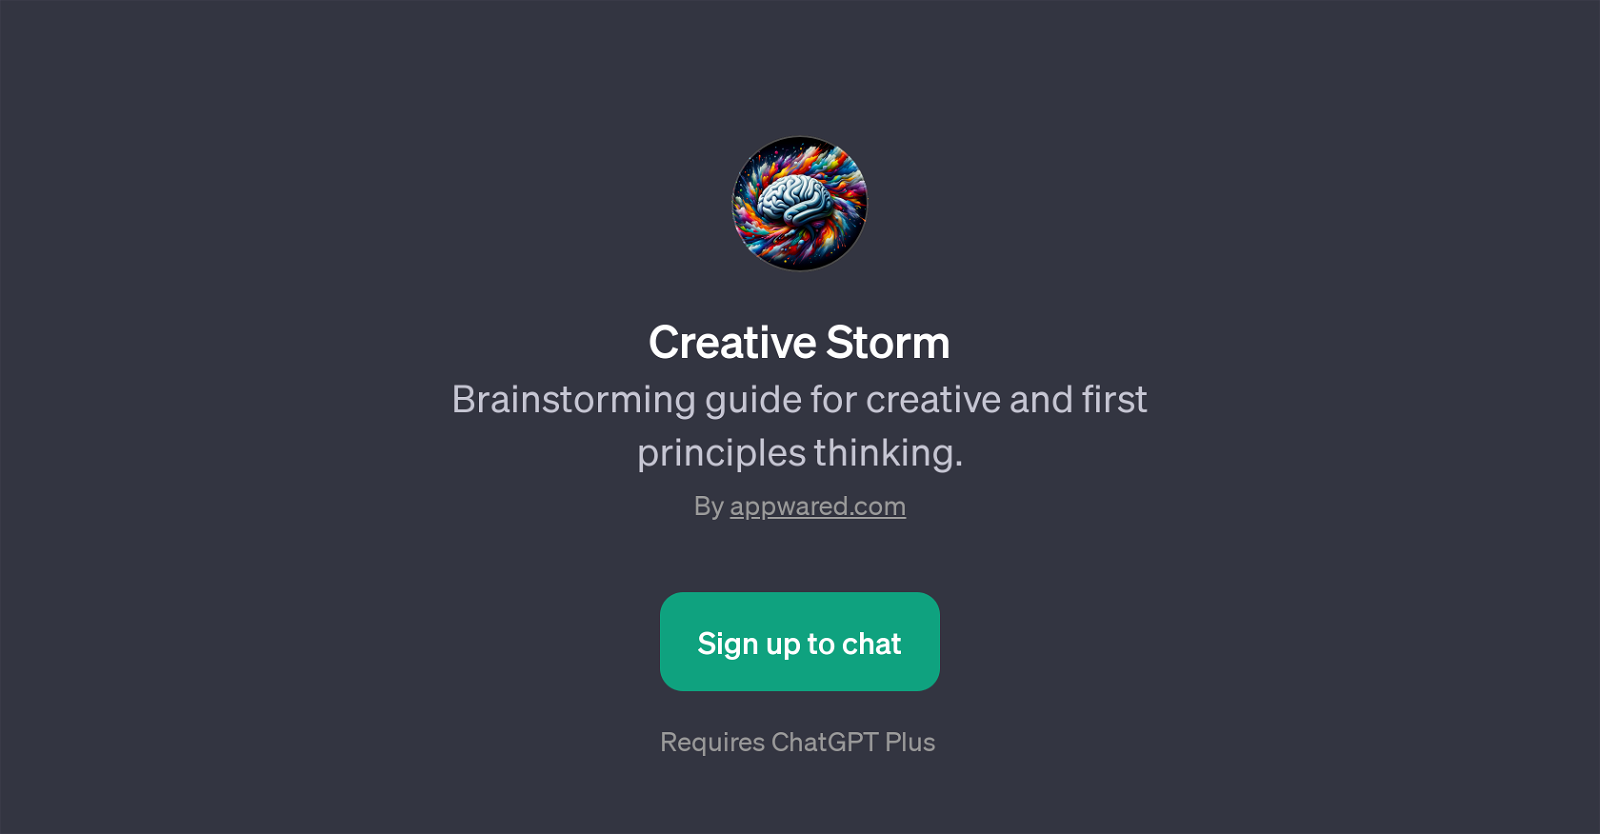 Creative Storm website